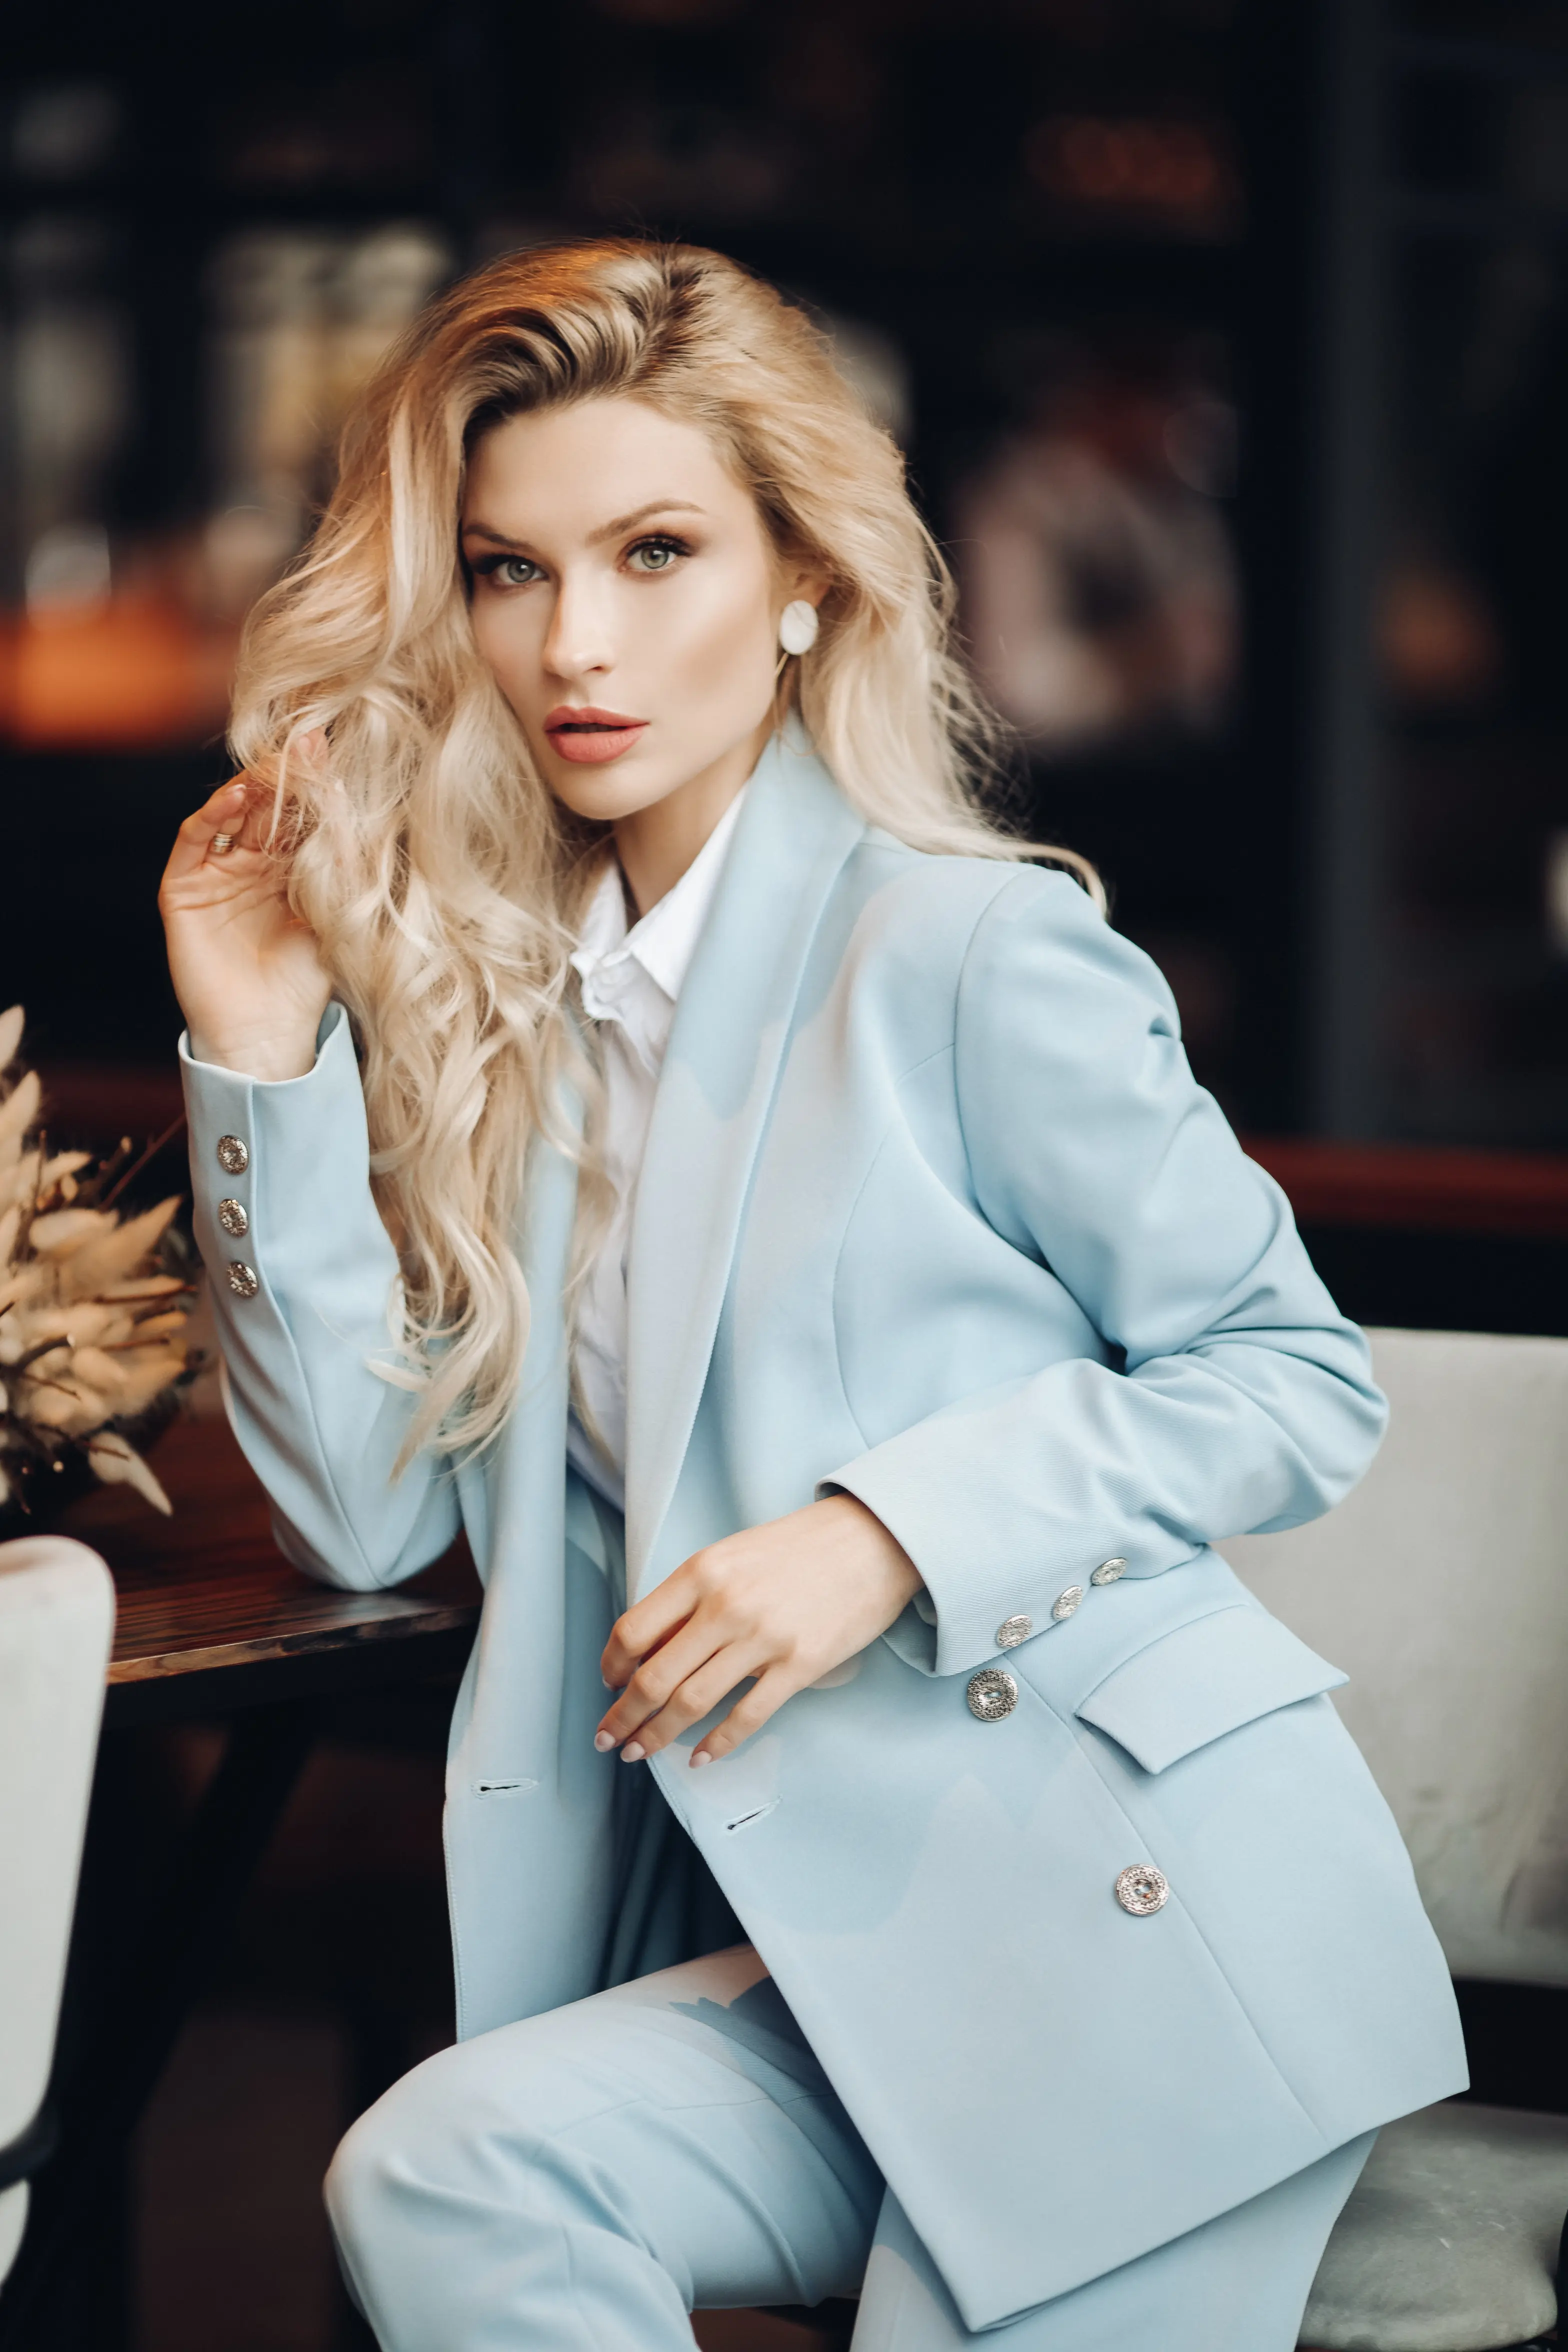 Blonde escort in blue suit